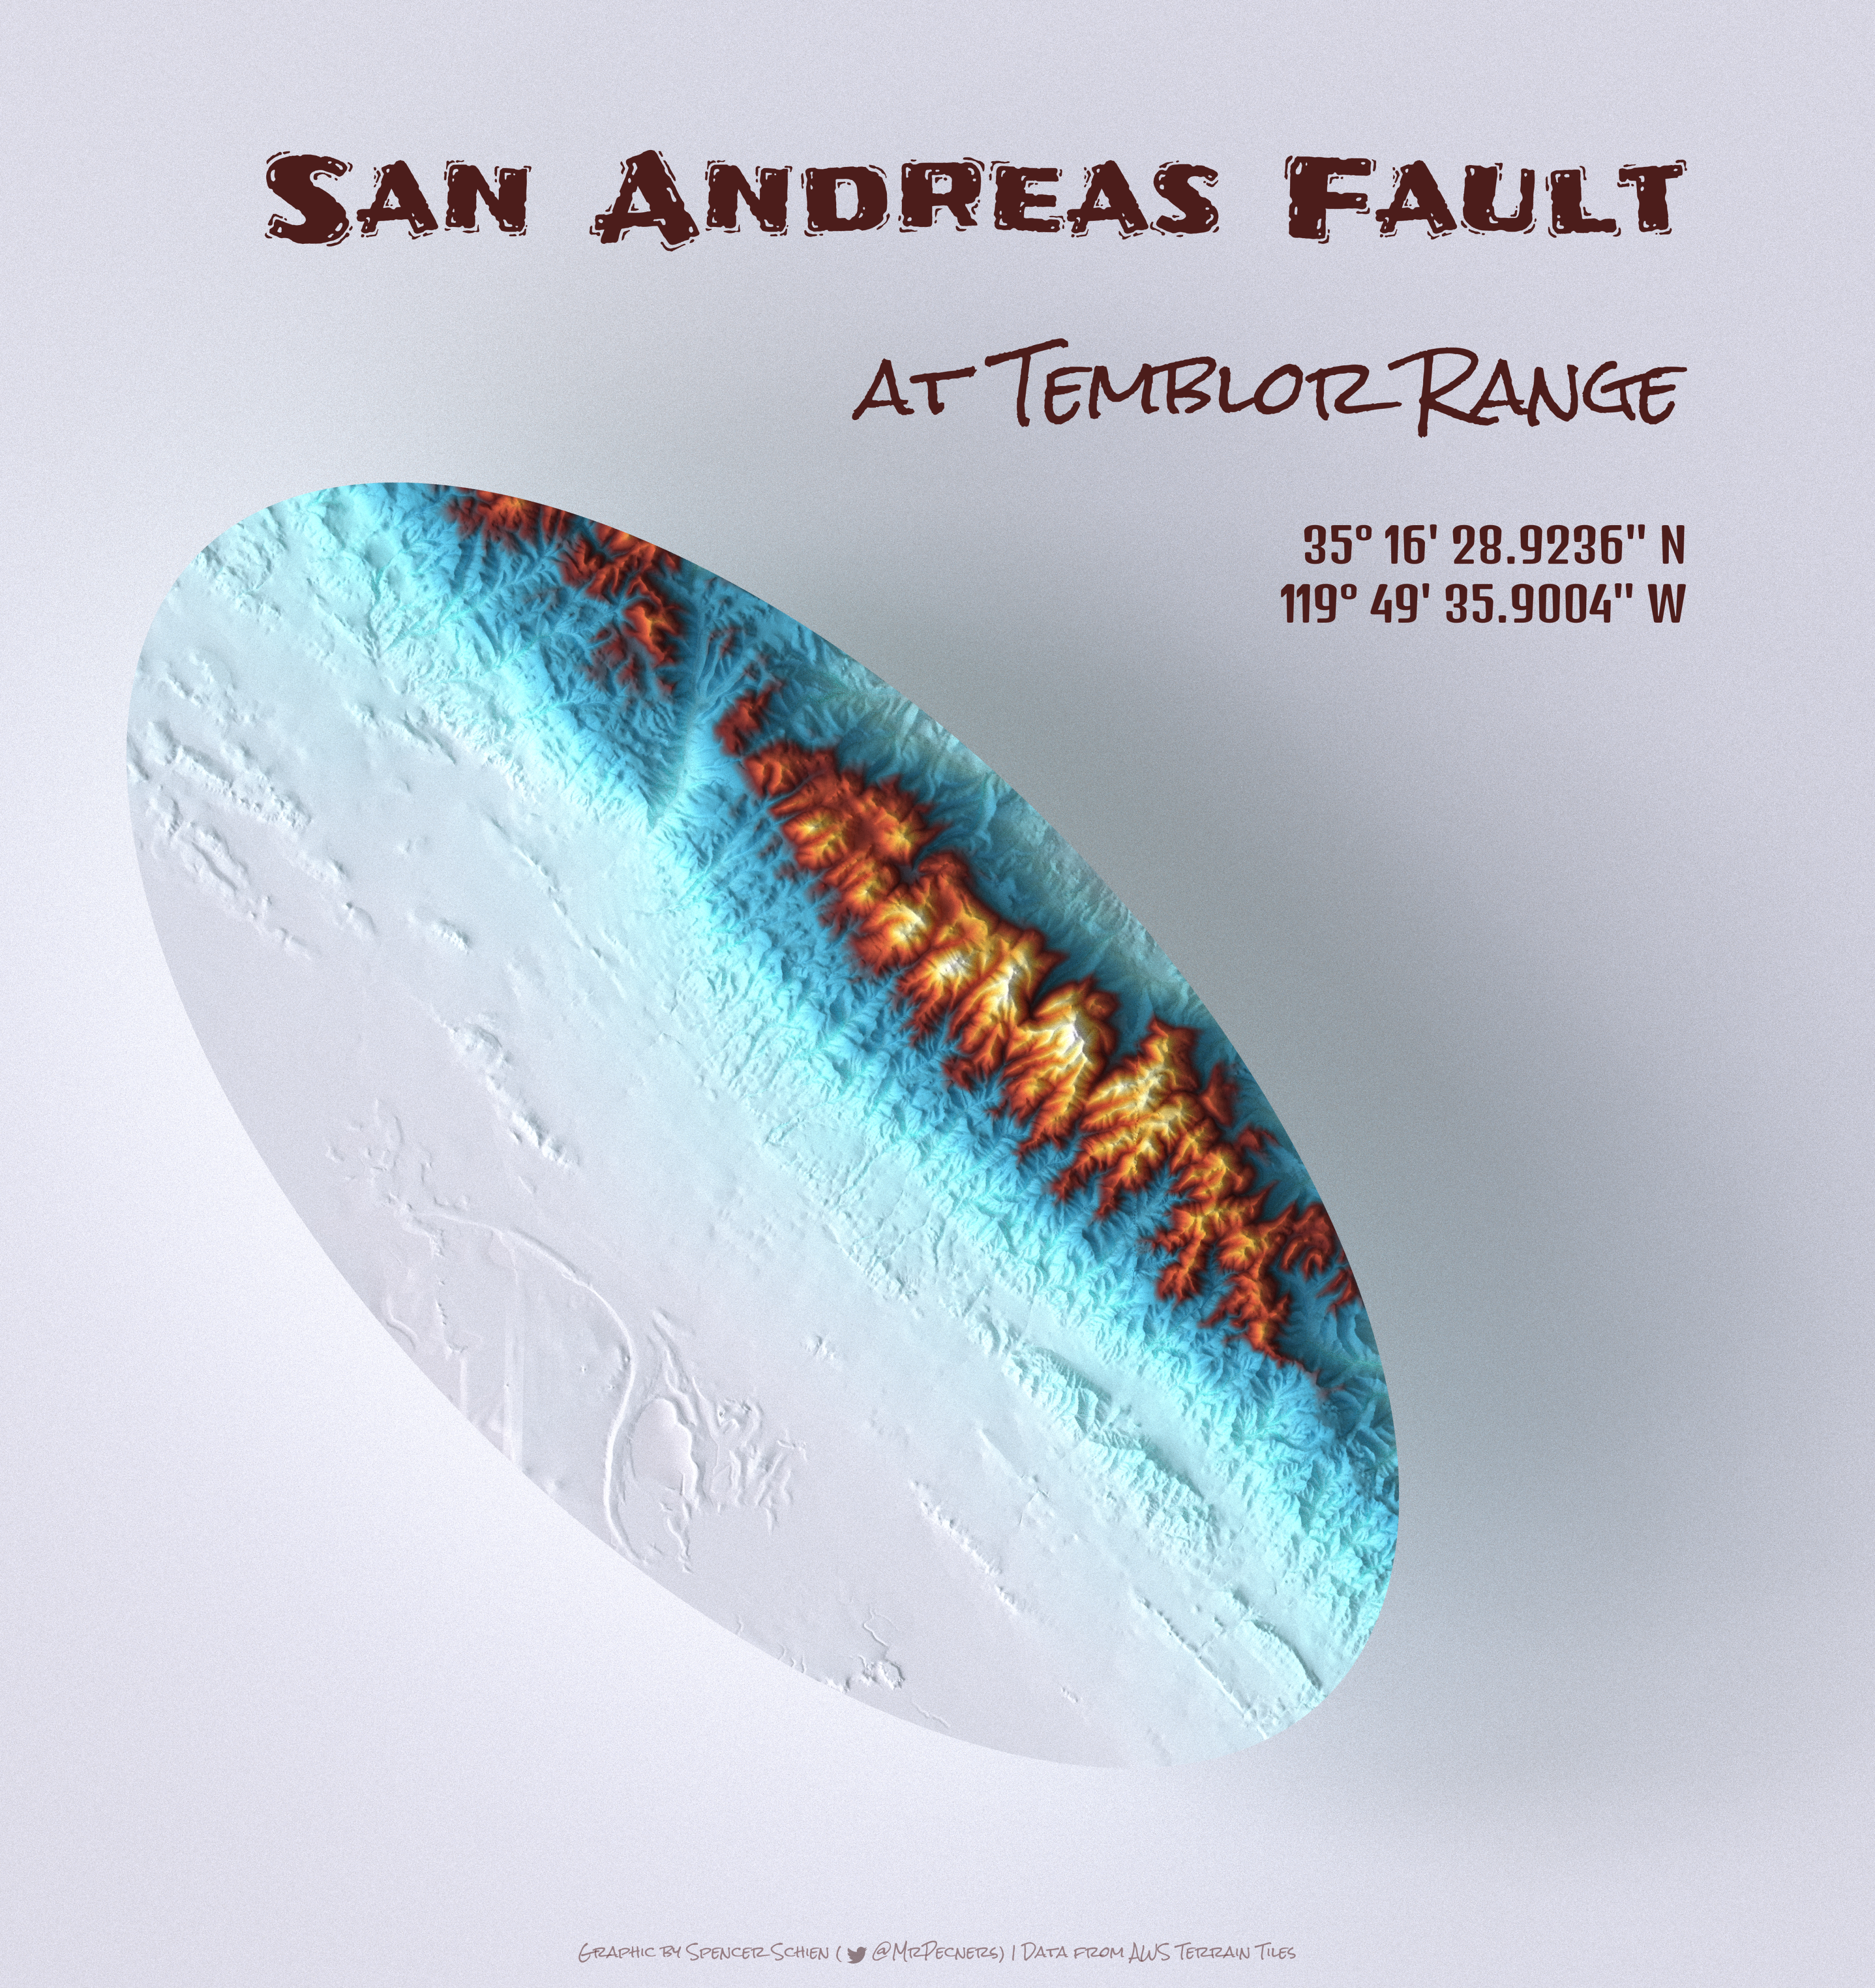 San Andreas Fault at Temblor Range